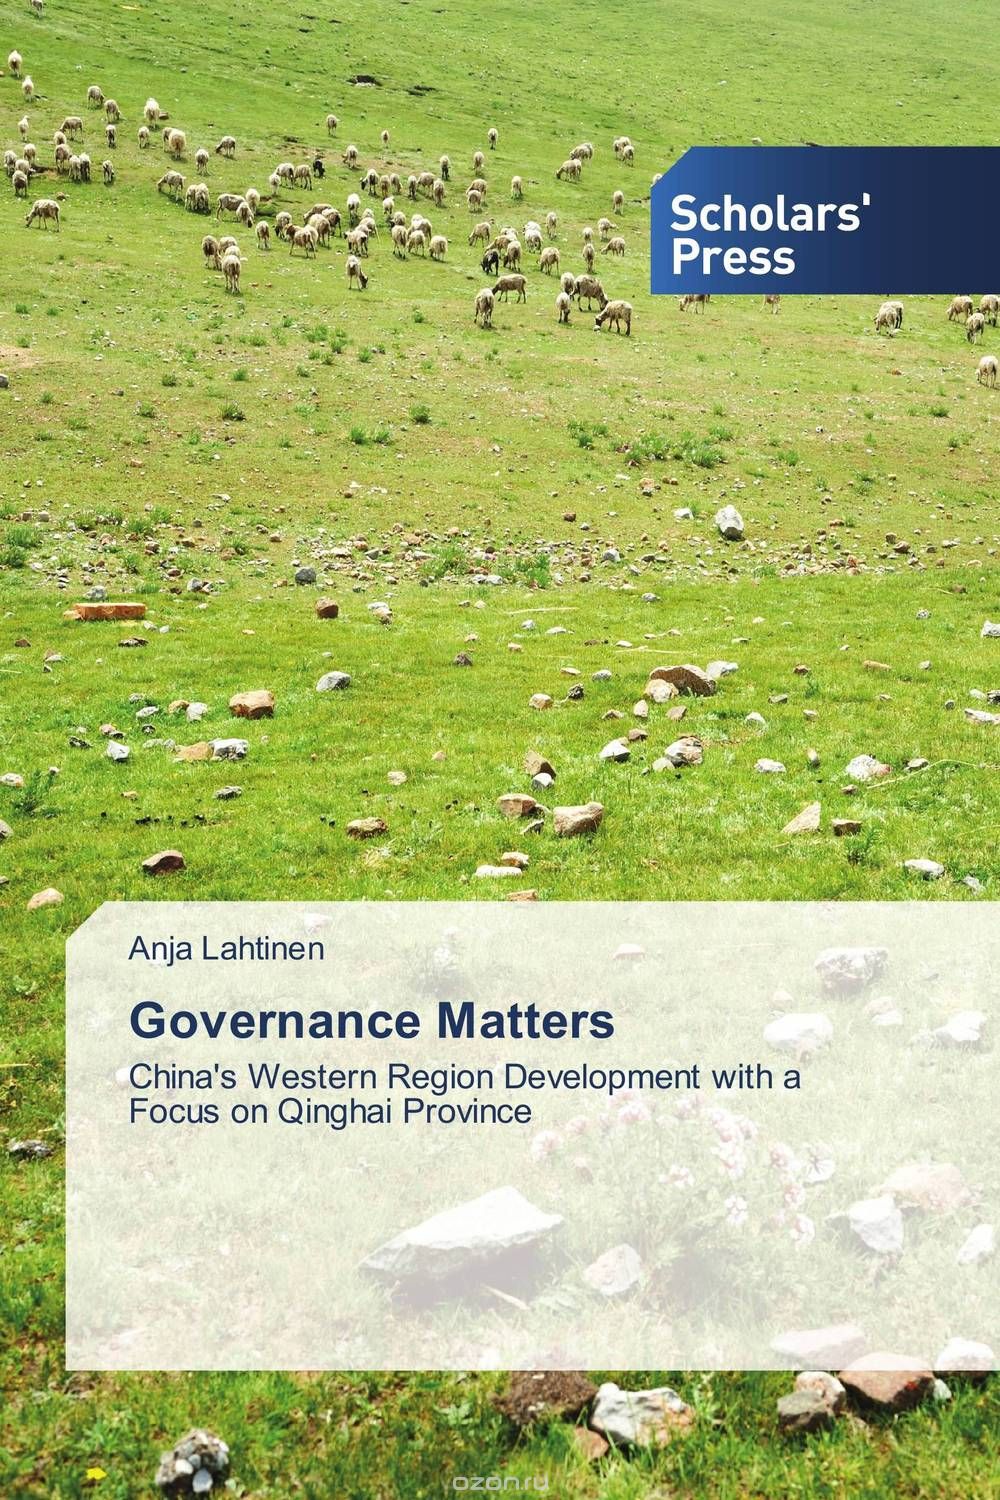 Скачать книгу "Governance Matters"